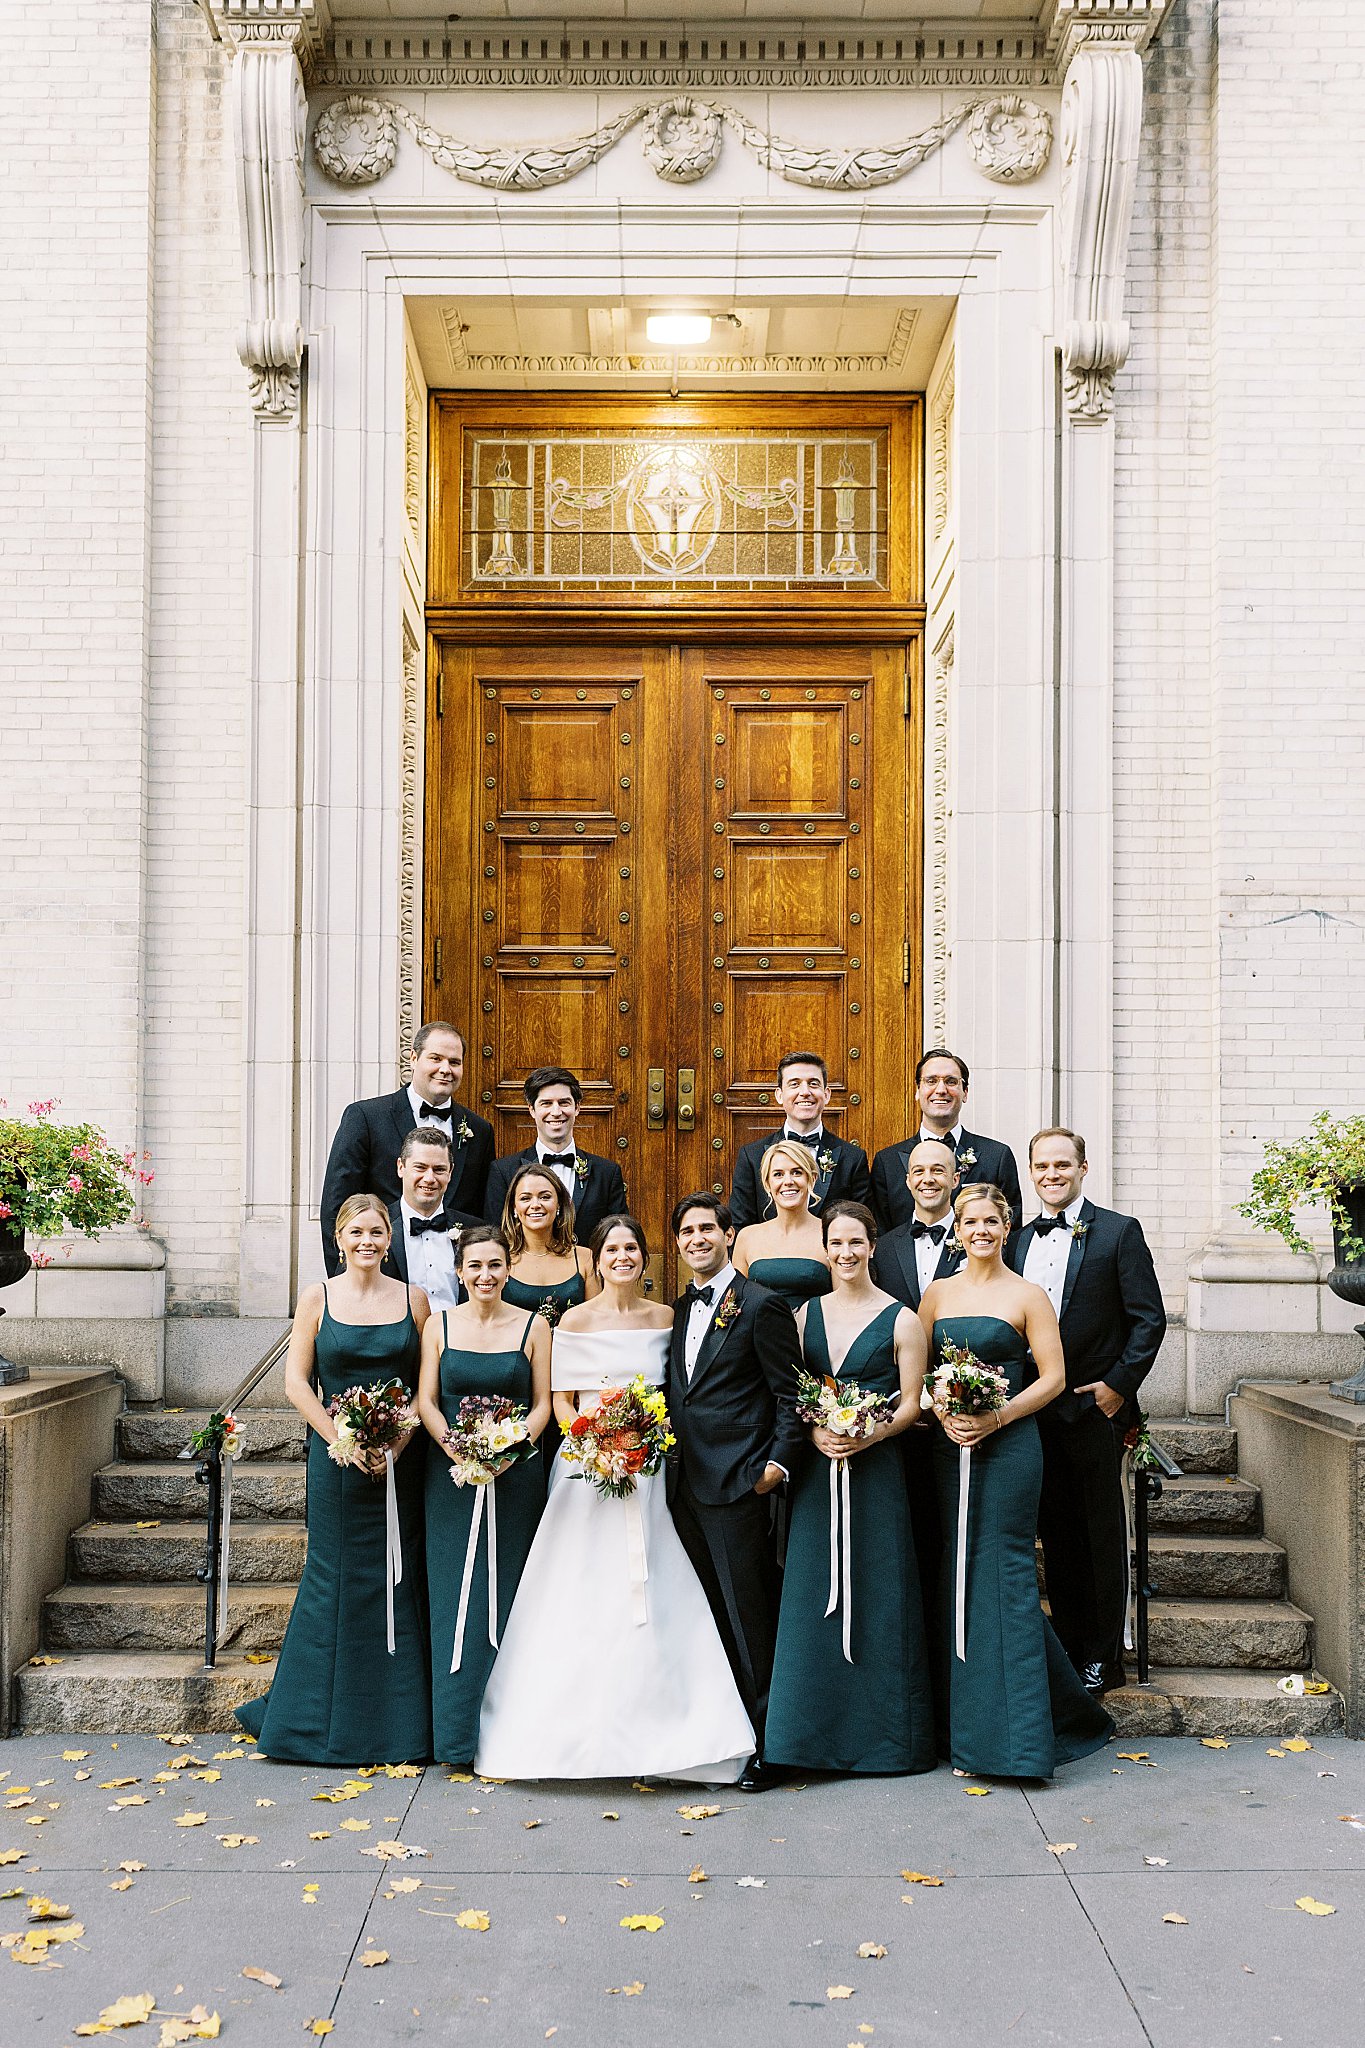 wedding party gathers on church steps by Lynne Reznick Photography